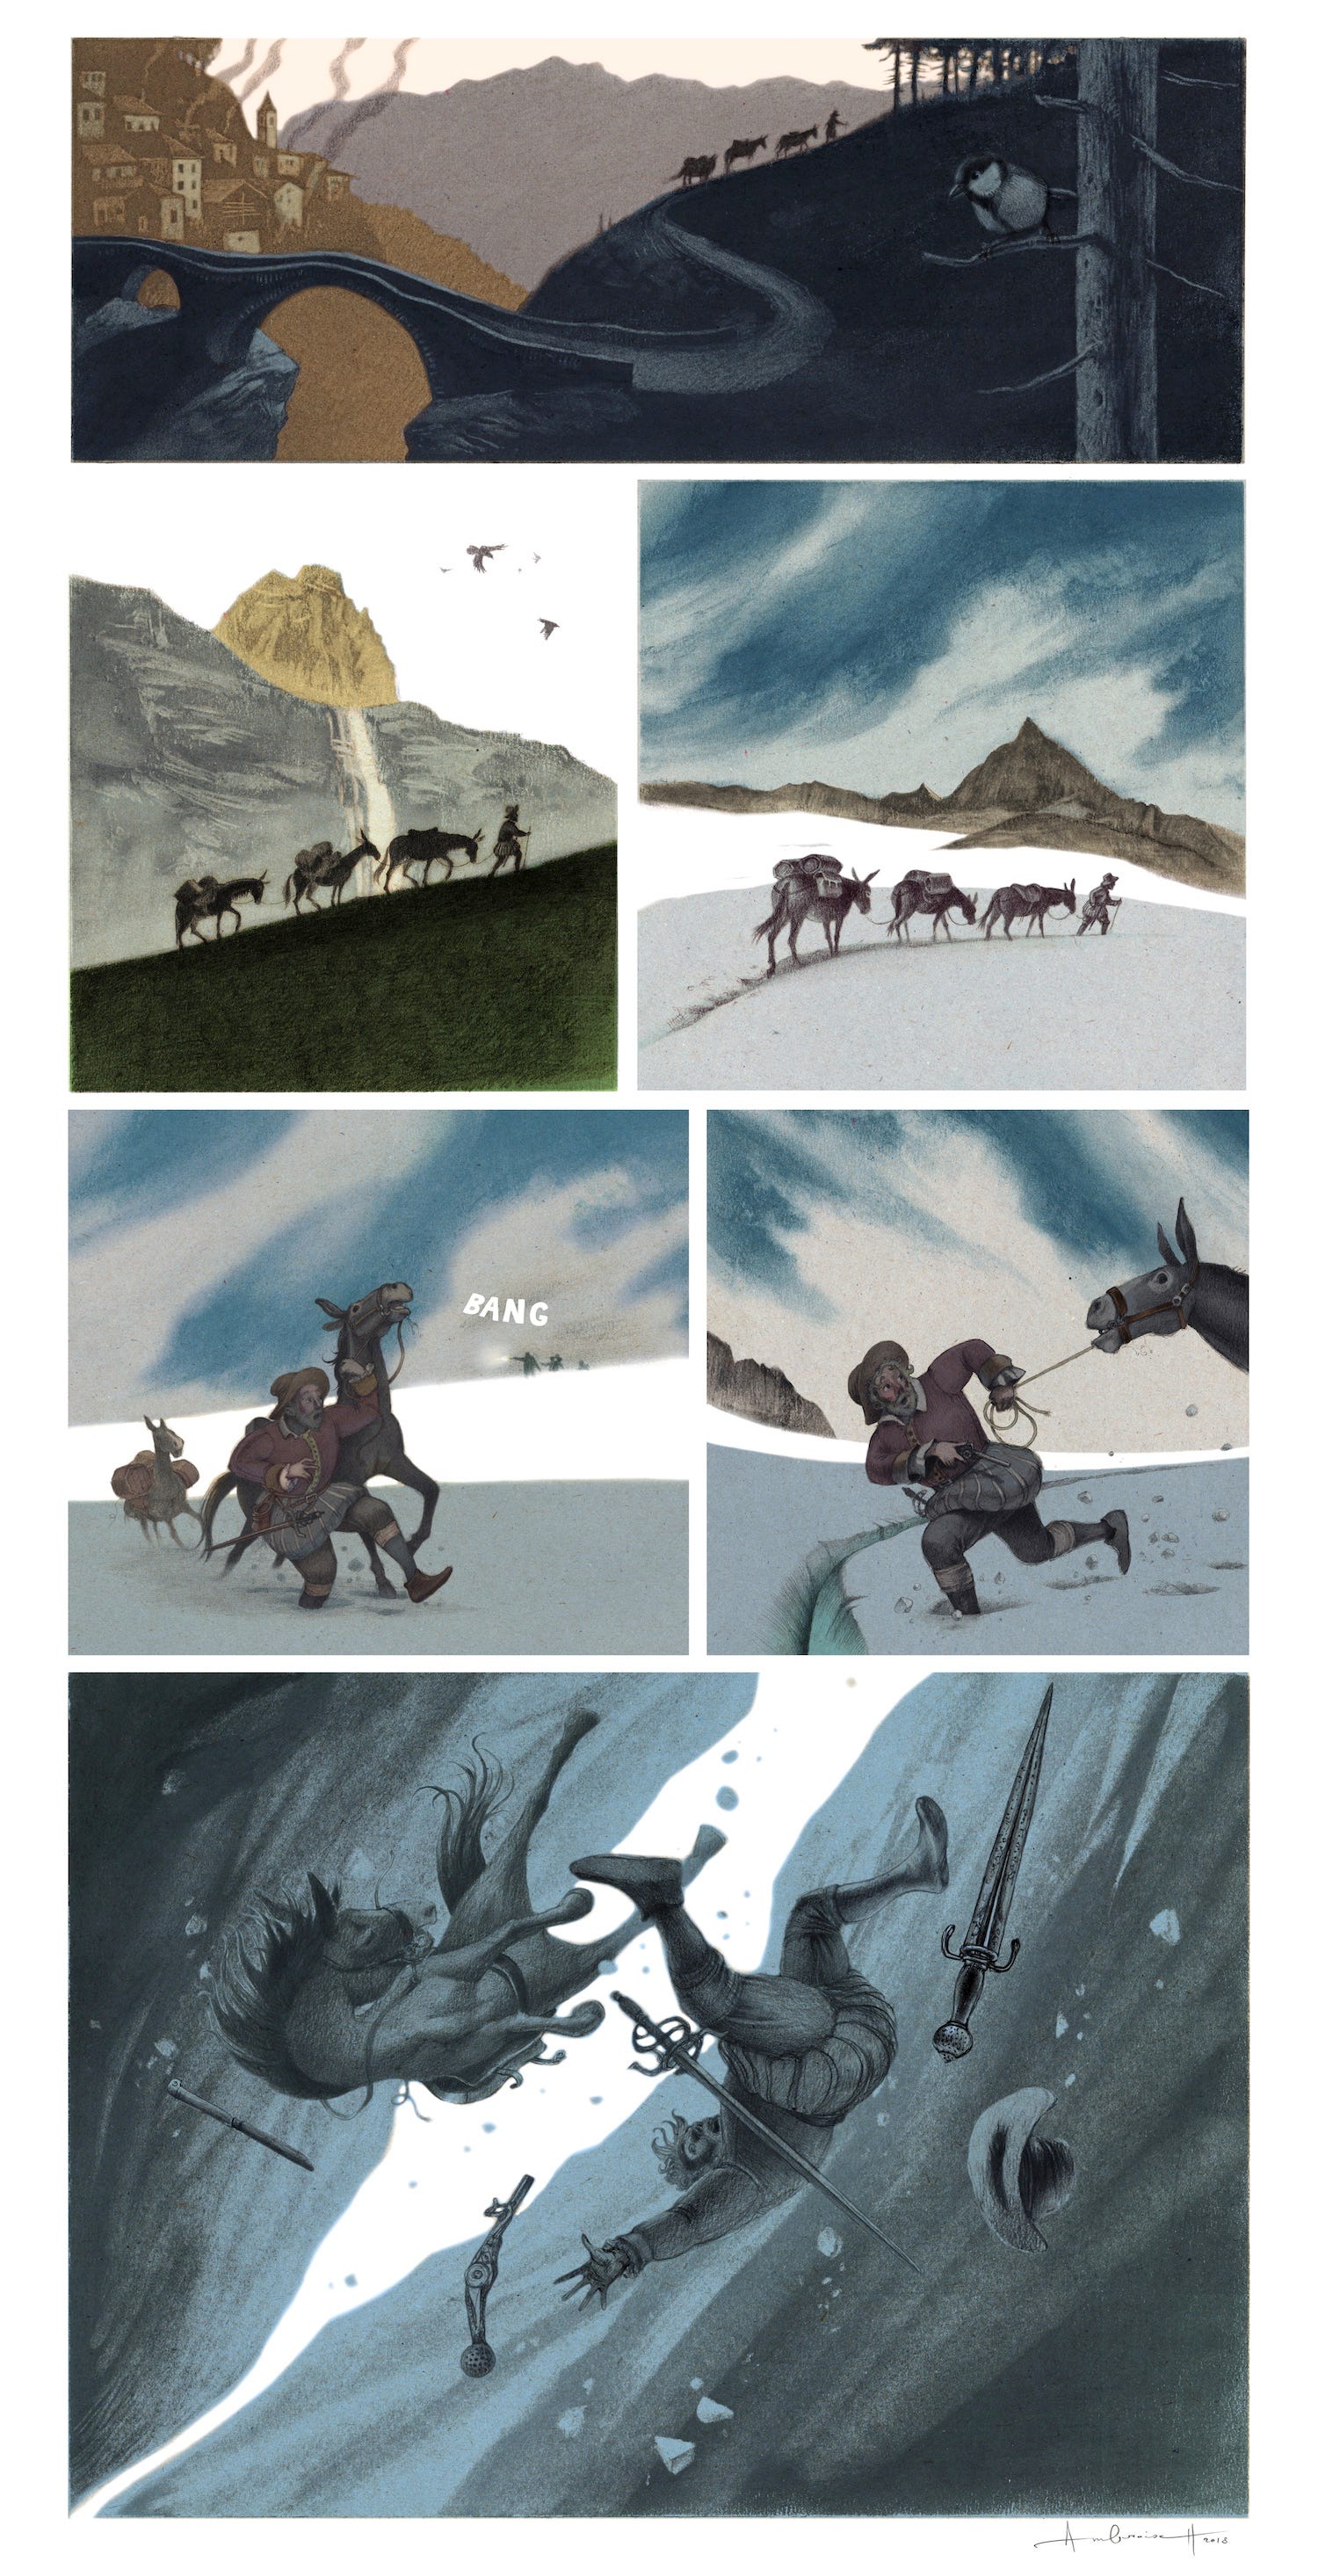 Illustrierter Comicstrip, der einen Mann in mittelalterlicher Tracht zeigt, der mit einer Reihe von drei Maultieren aus einer Stadt heraus, einen Berg hinauf und auf einen Gletscher geht und dann in eine riesige Gletscherspalte fällt, in sechs Tafeln